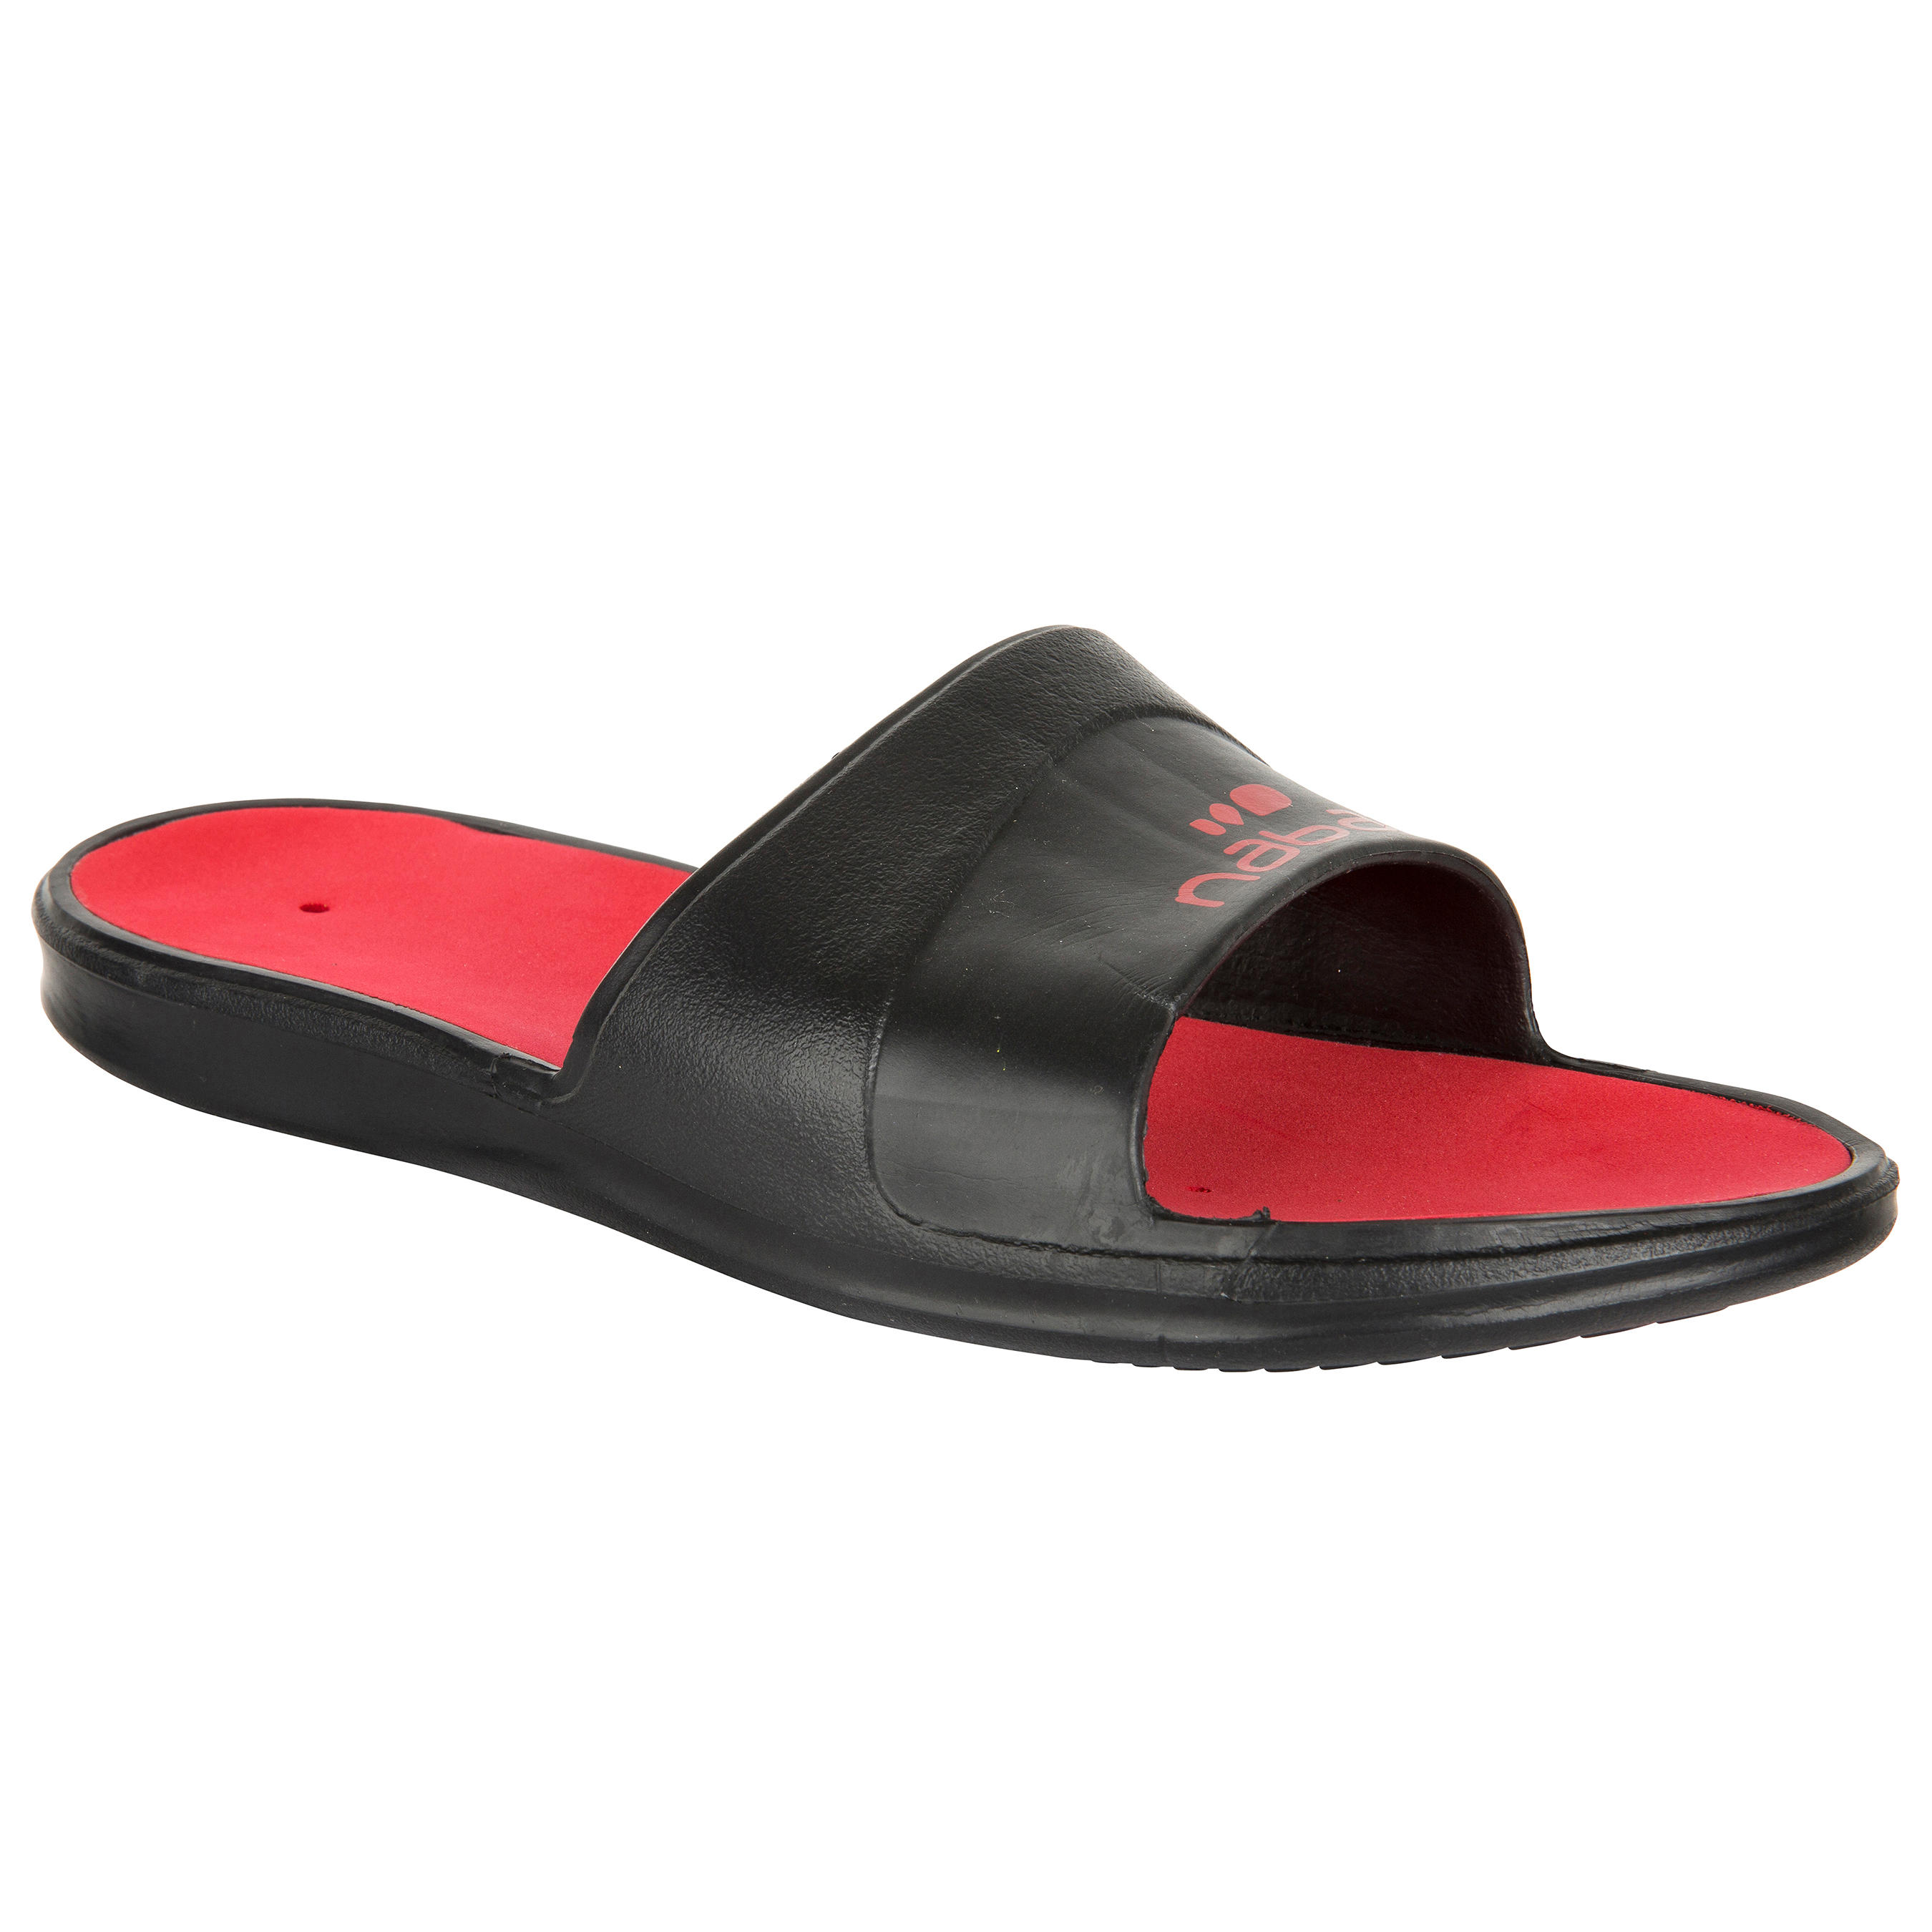 NABAIJI Metaslap Men's Pool Sandals - Black Red